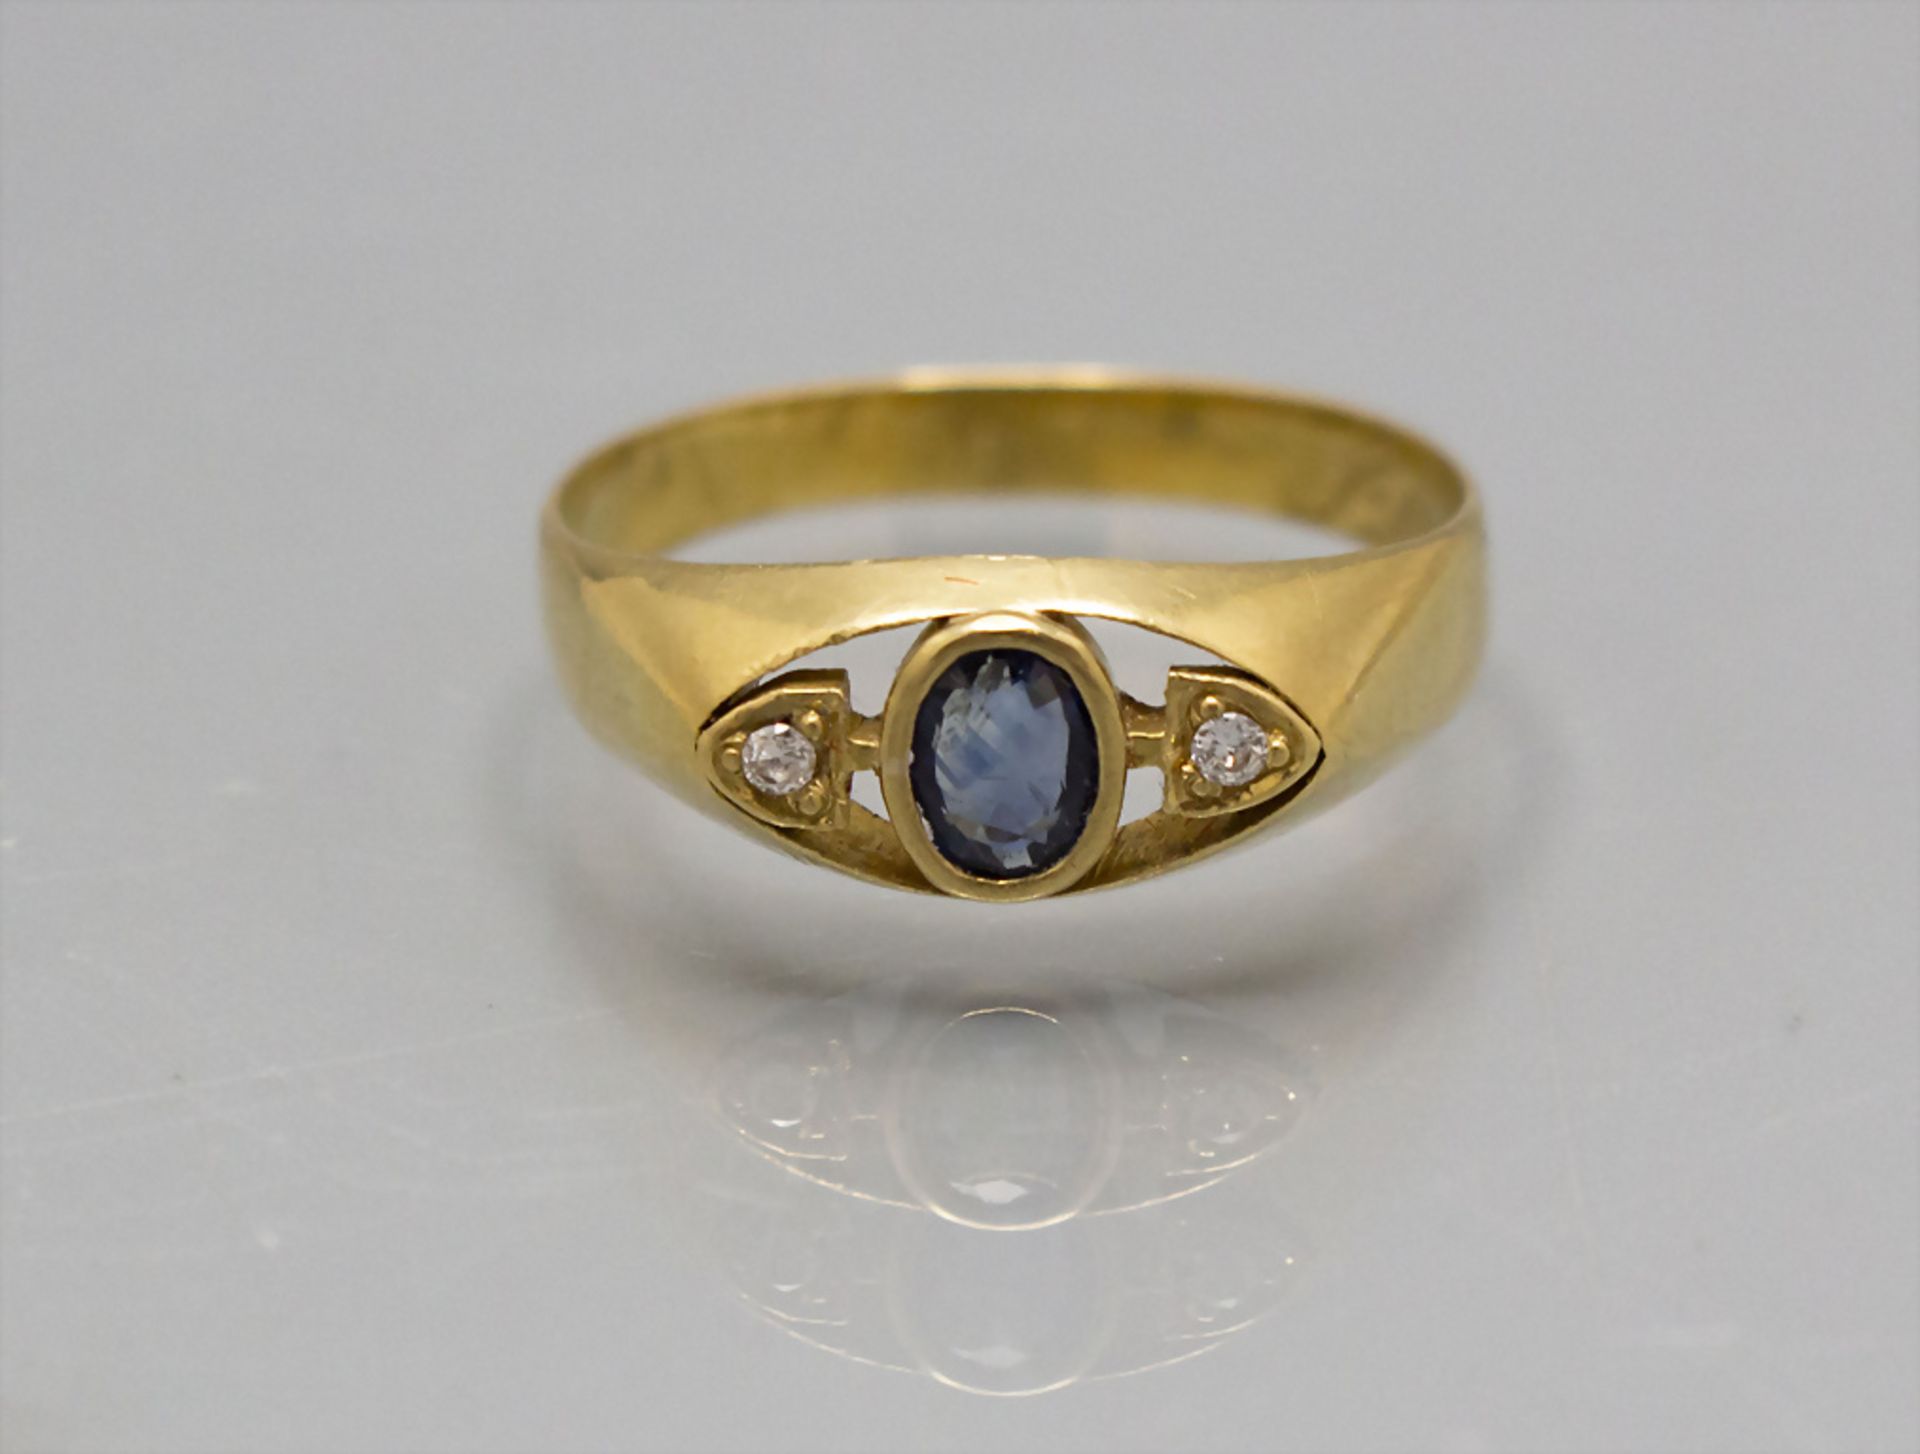 Damenring mit Saphir und Brillanten / A ladies 18 ct gold ring with diamonds and sapphire